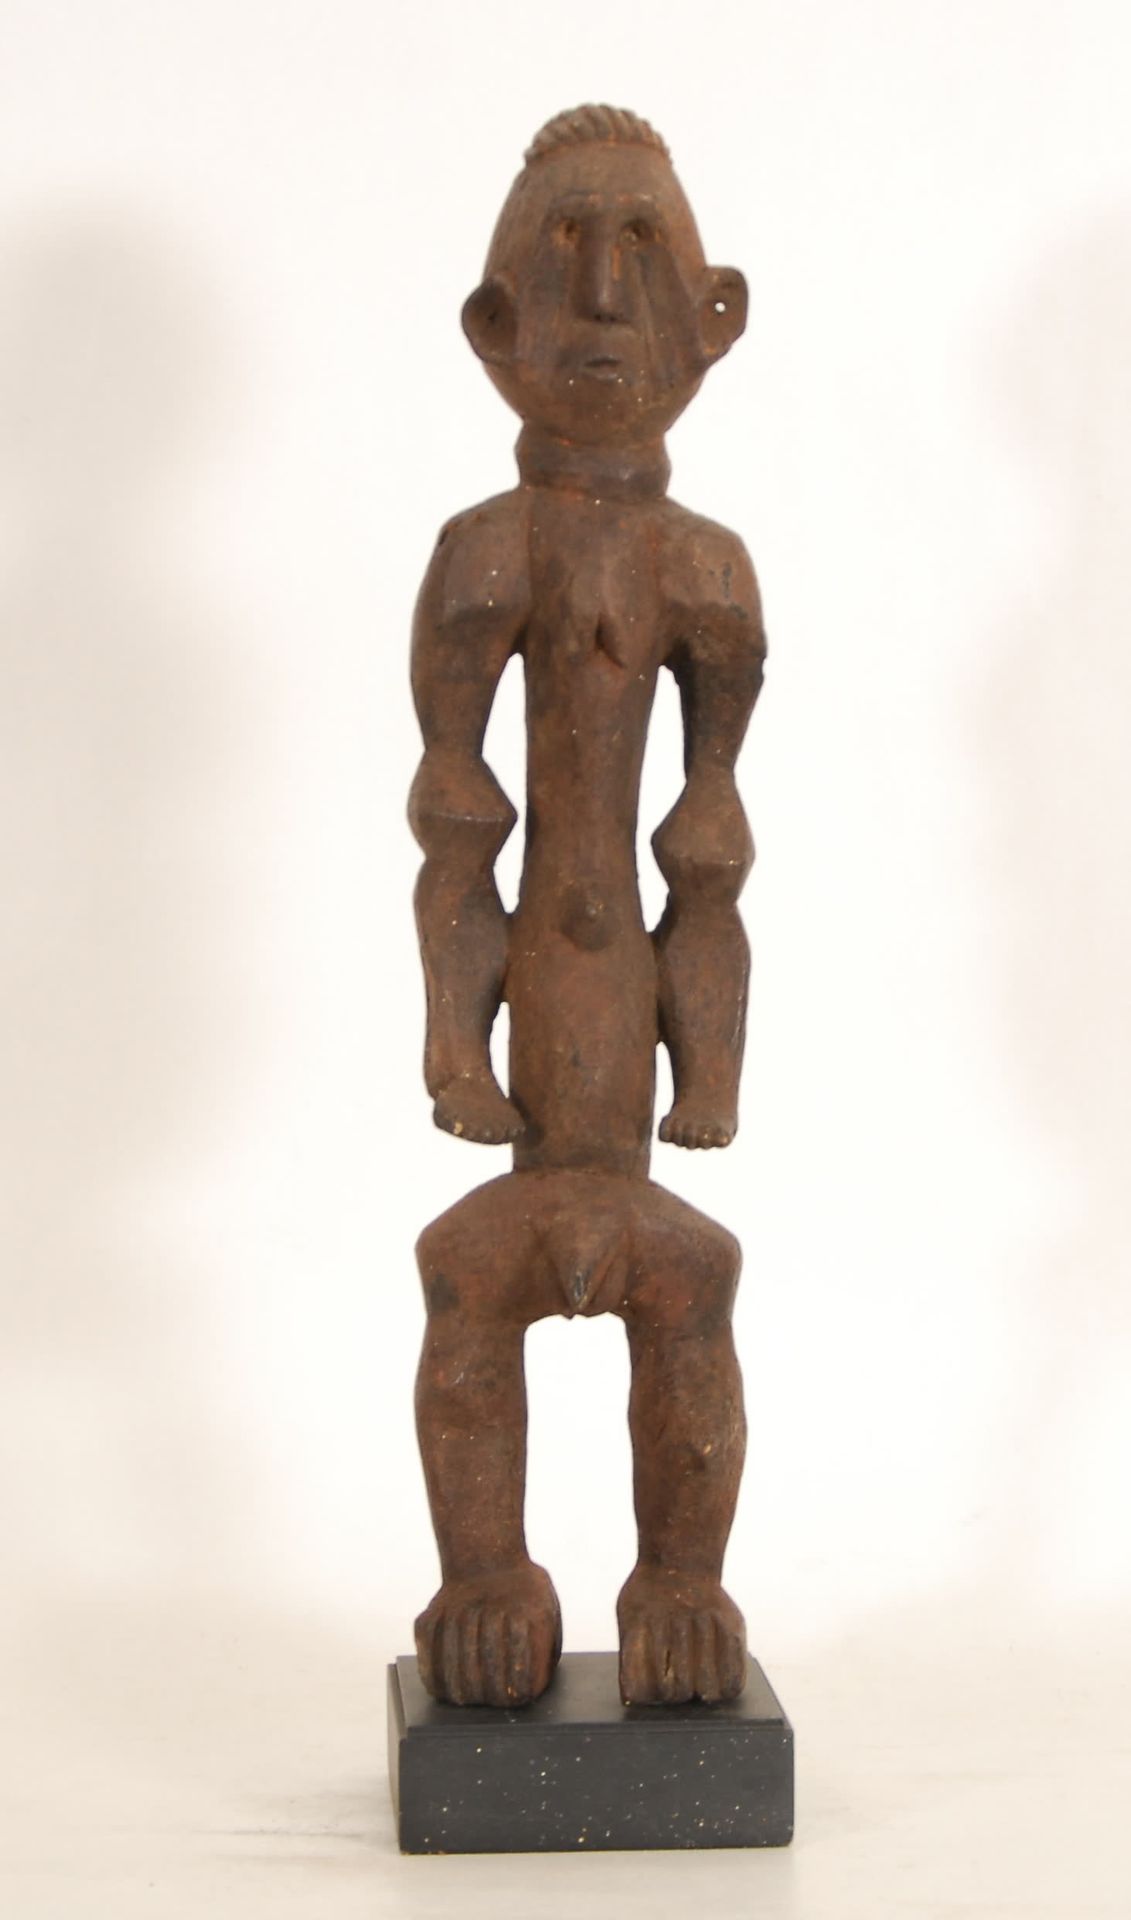 Afrique - Africa 恋物癖
木雕，喀麦隆。
高58厘米。
出处：前杜哈特尔收藏品